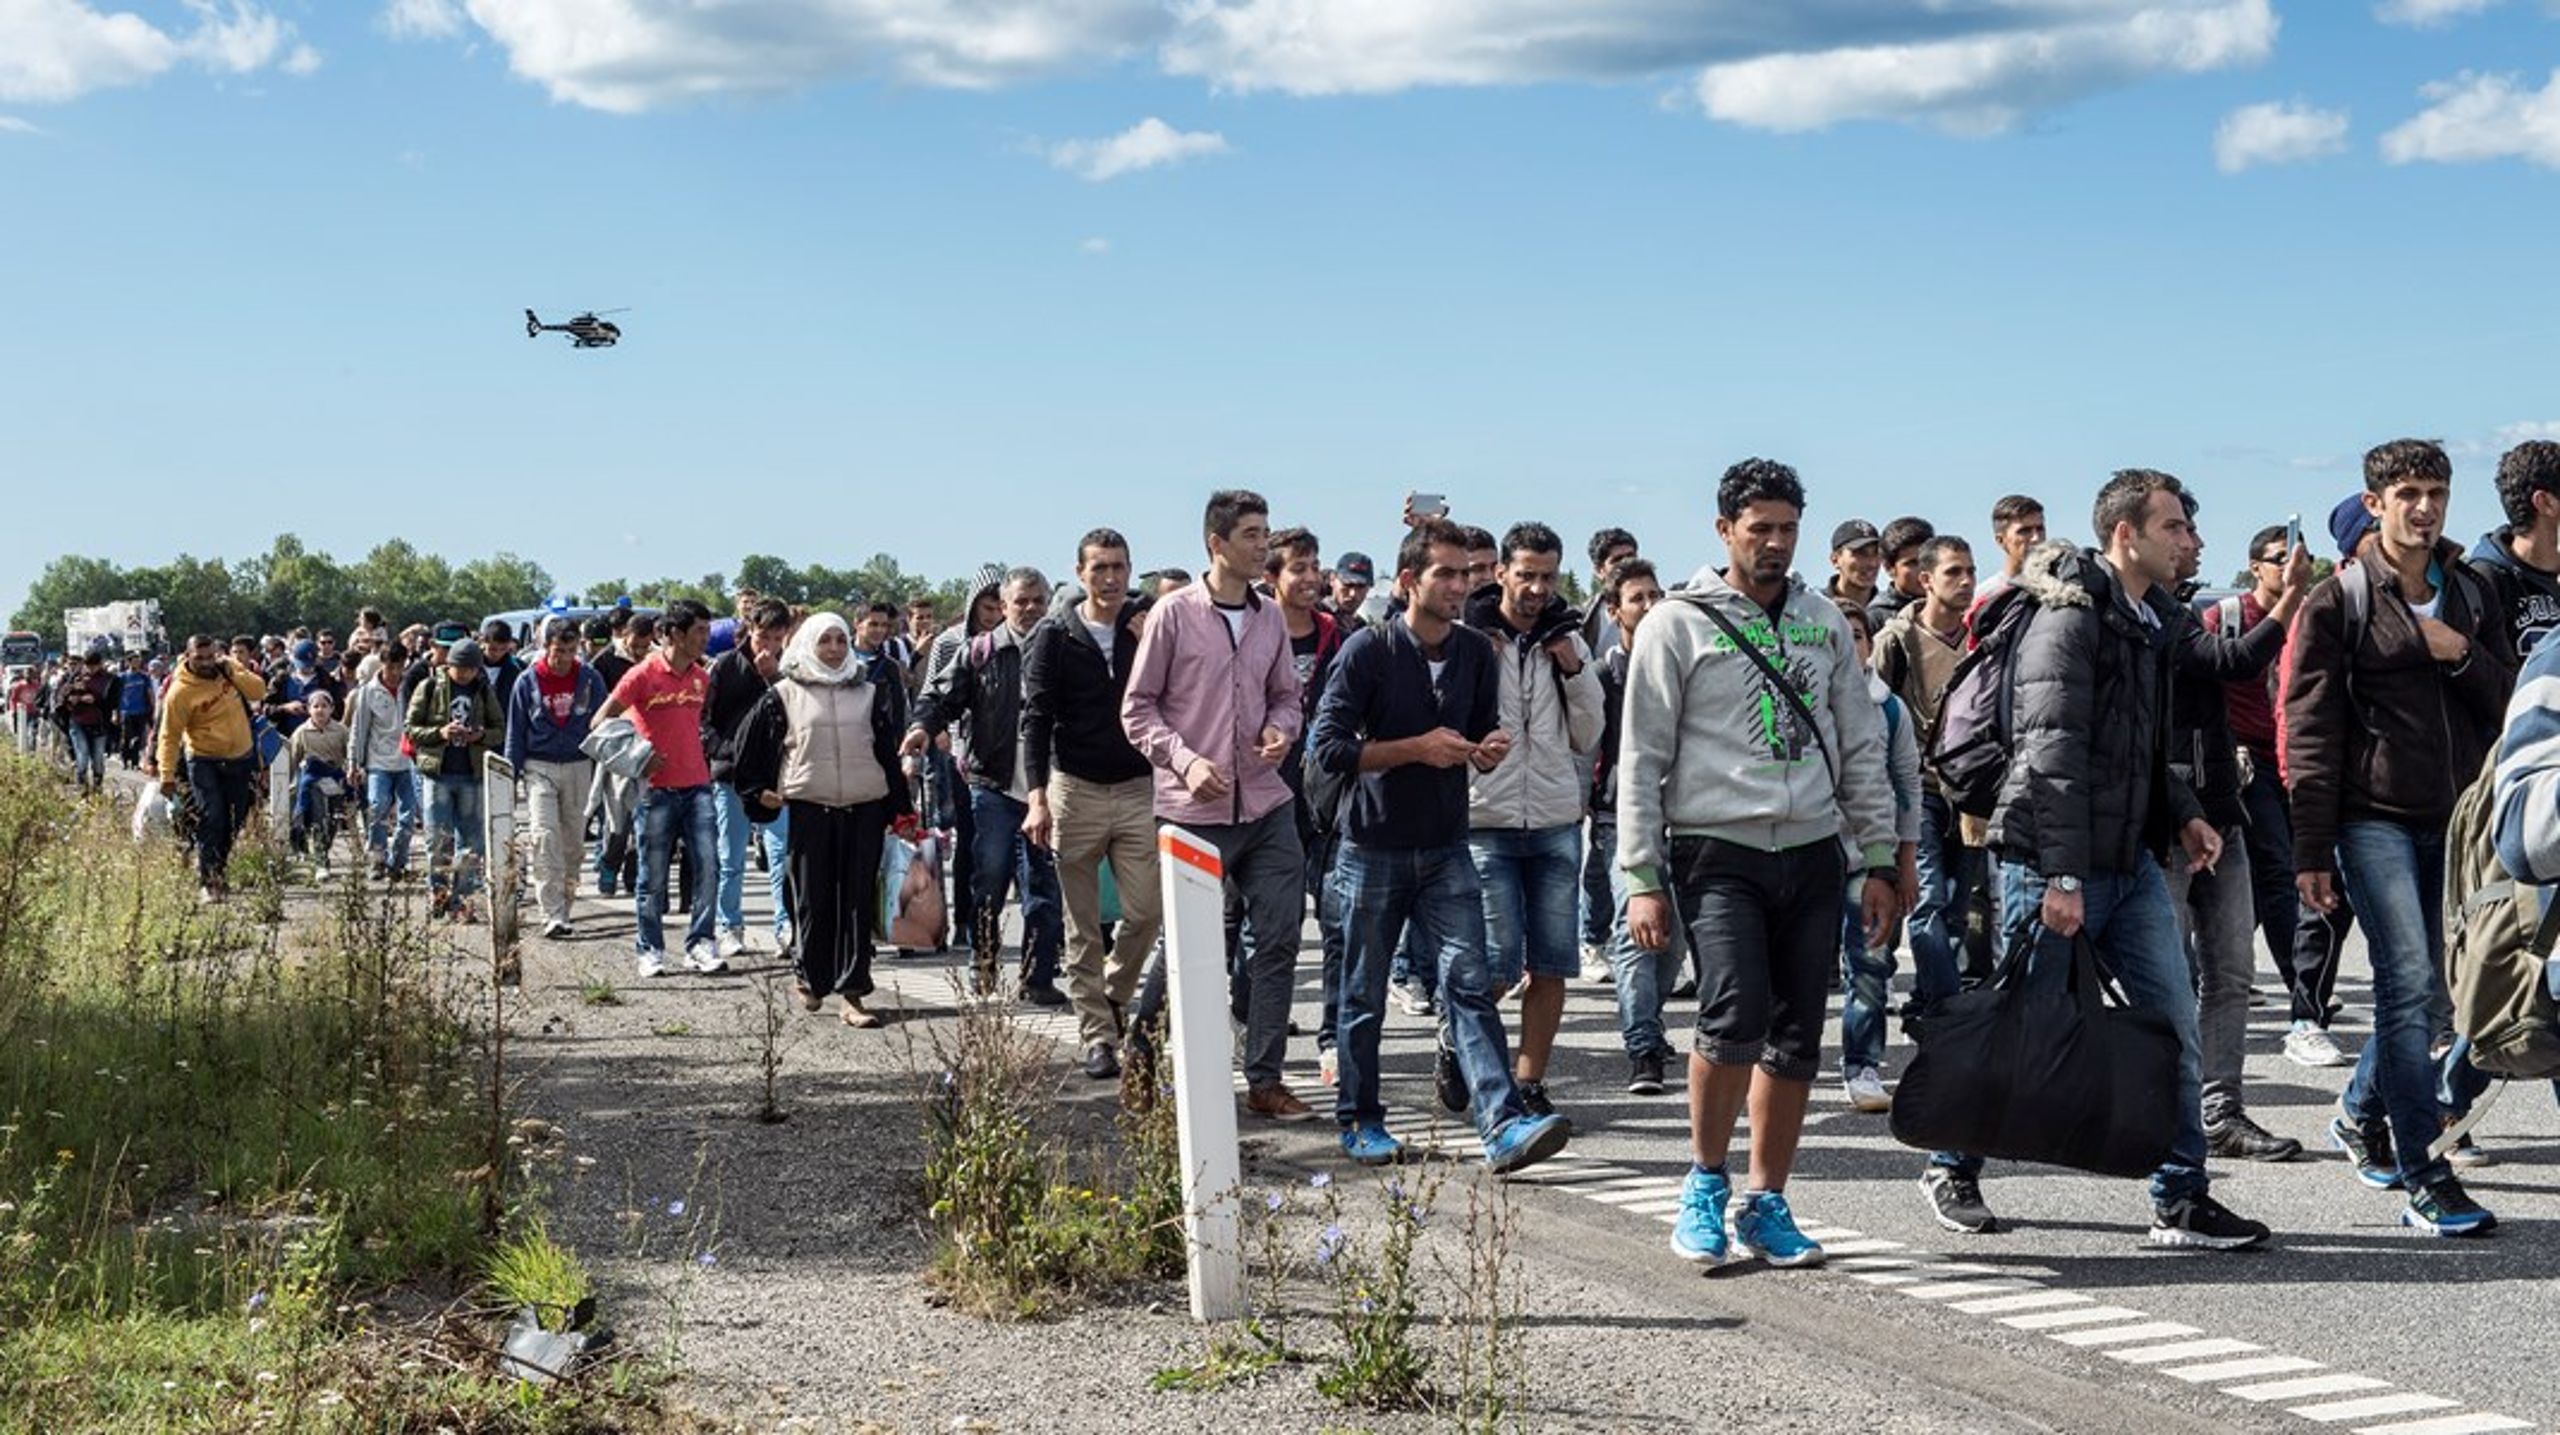 Danmark glimrer ved sit fravær i en EU-solidarisk aftale, der blandt andet skulle hjælpe 1.600 uledsagede flygtningebørn, skriver Knud Vilby.